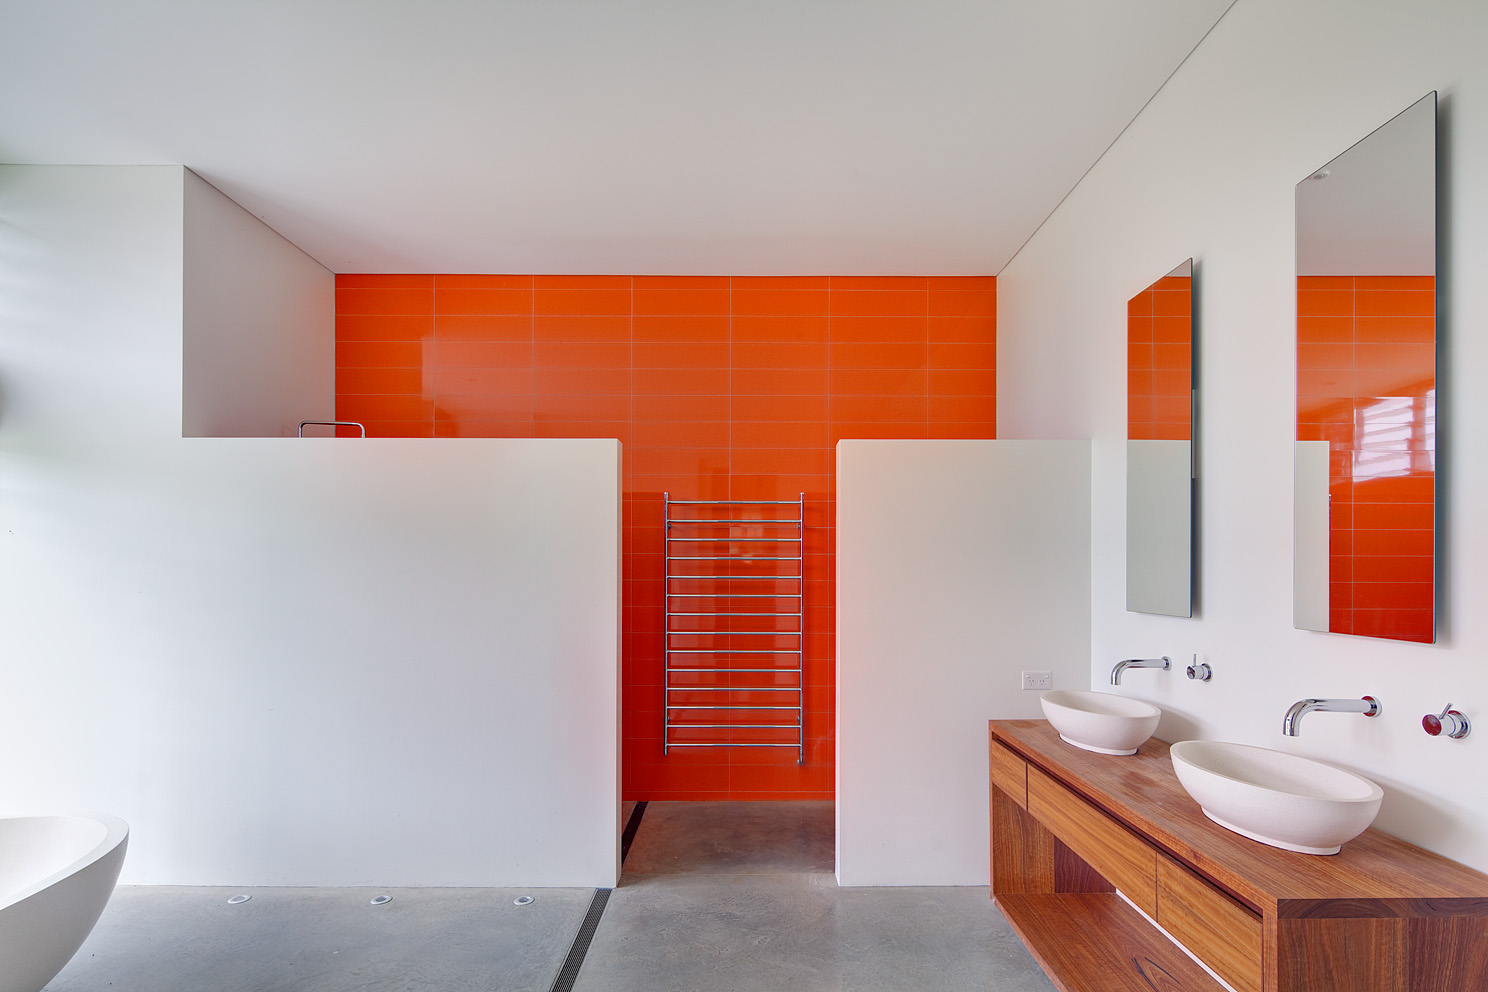 ديناميكي ، برتقالي نيون تقريبًا في تصميم الحمام